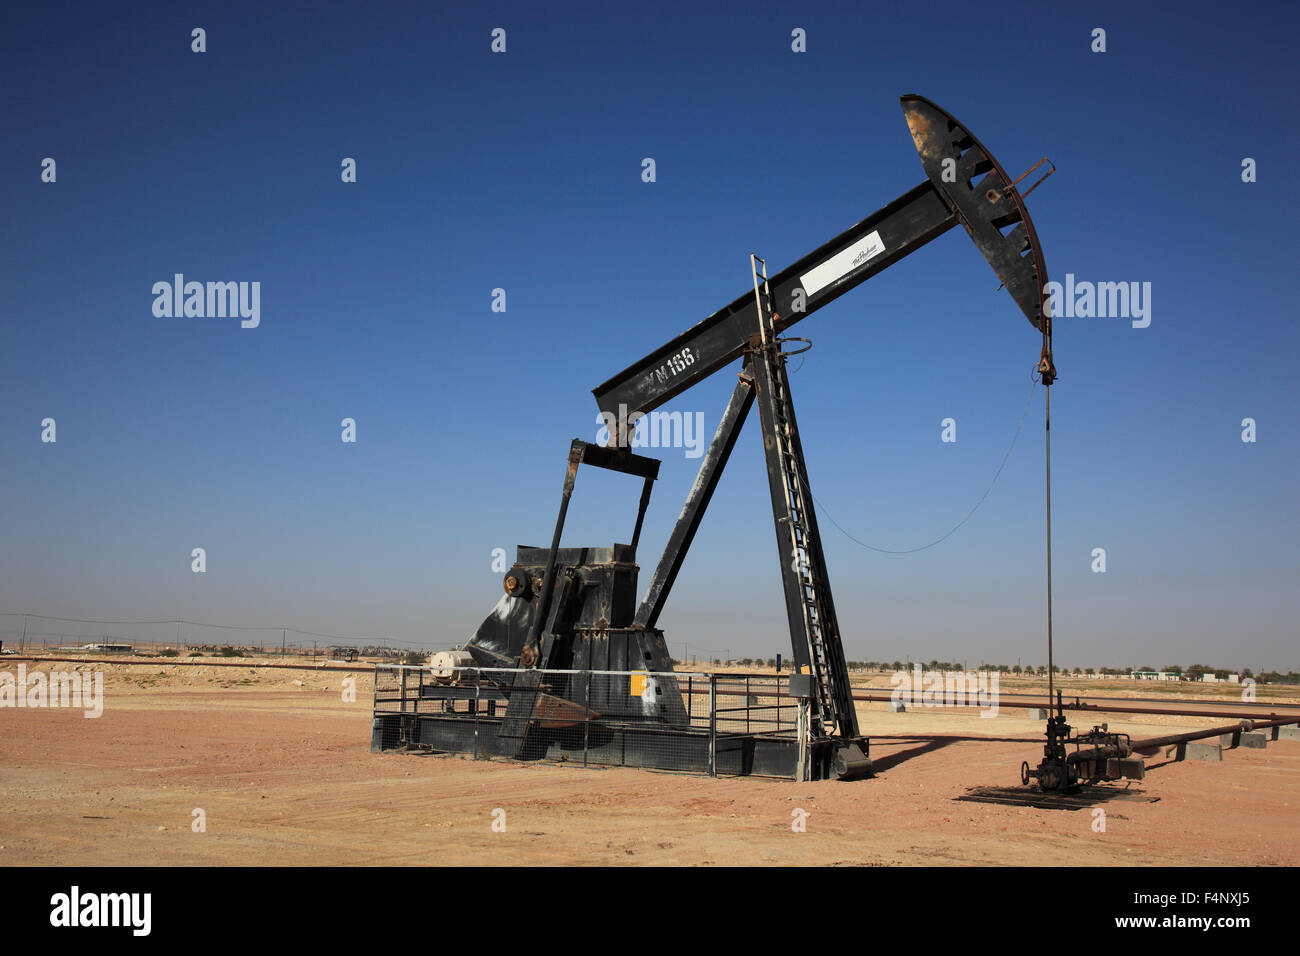 La pompe à huile, Oman Marmul Banque D'Images